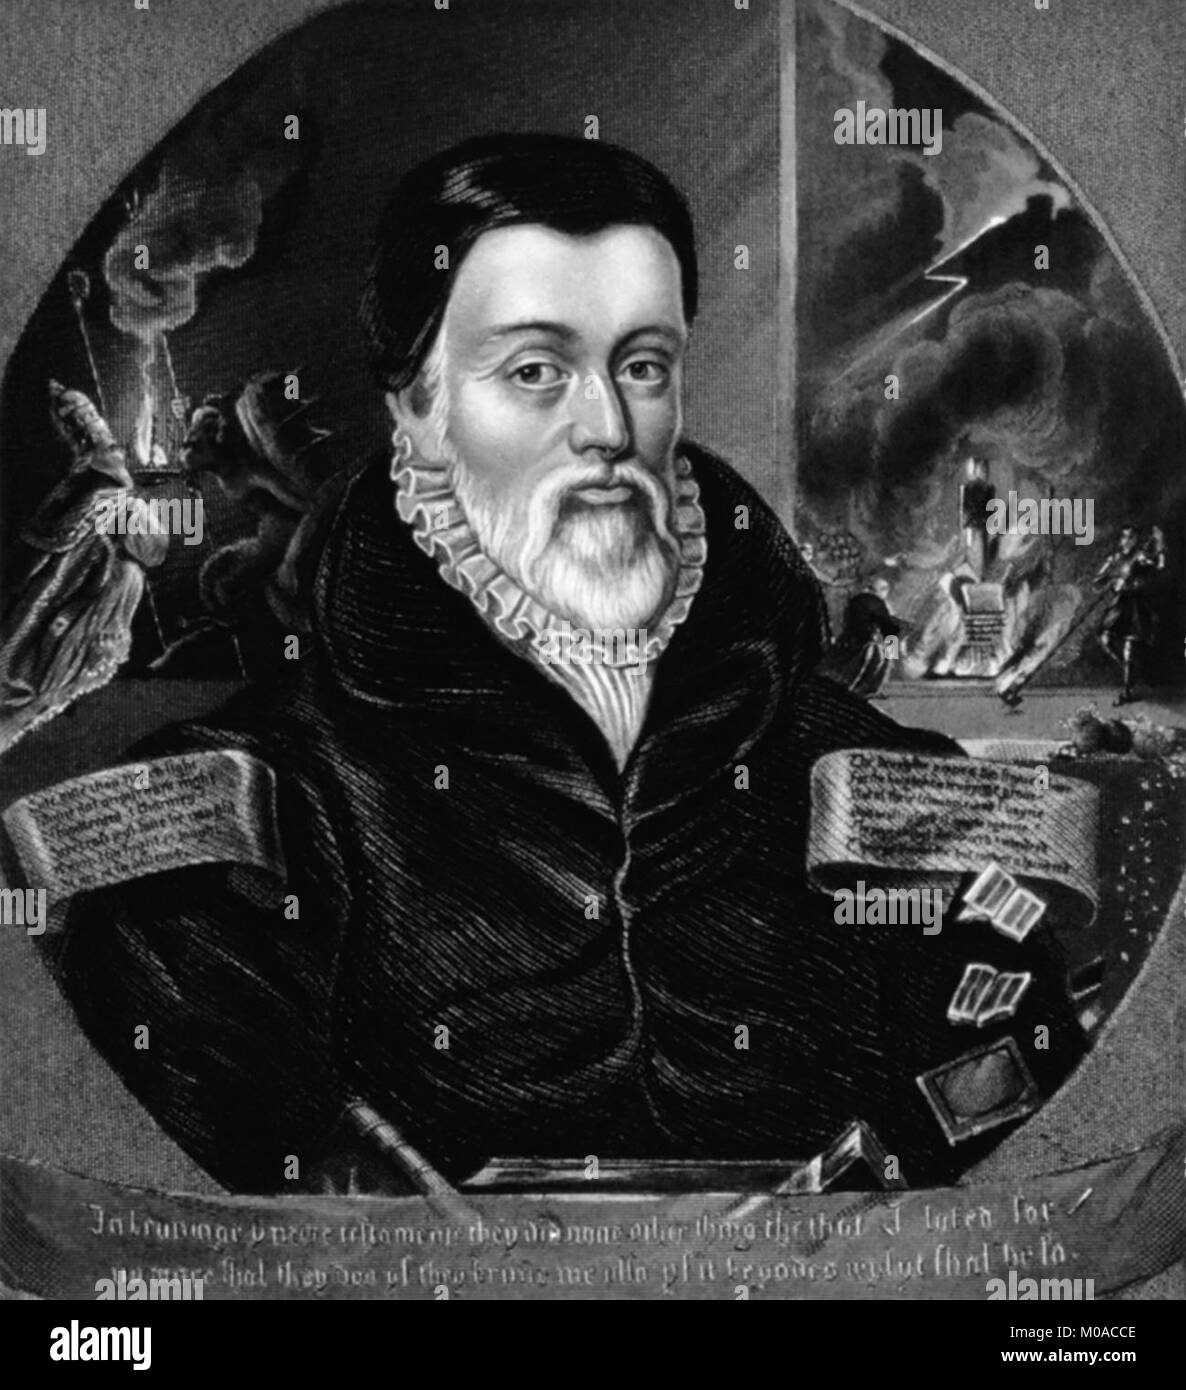 William Tyndale (1494 - 1536) era un studioso inglese e protagonista della riforma protestante che, sfidando la Chiesa Cattolica e il governo inglese, tradotto la Bibbia in lingua inglese, per la quale egli è stato strangolato e bruciato sul rogo nel 1536. Foto Stock